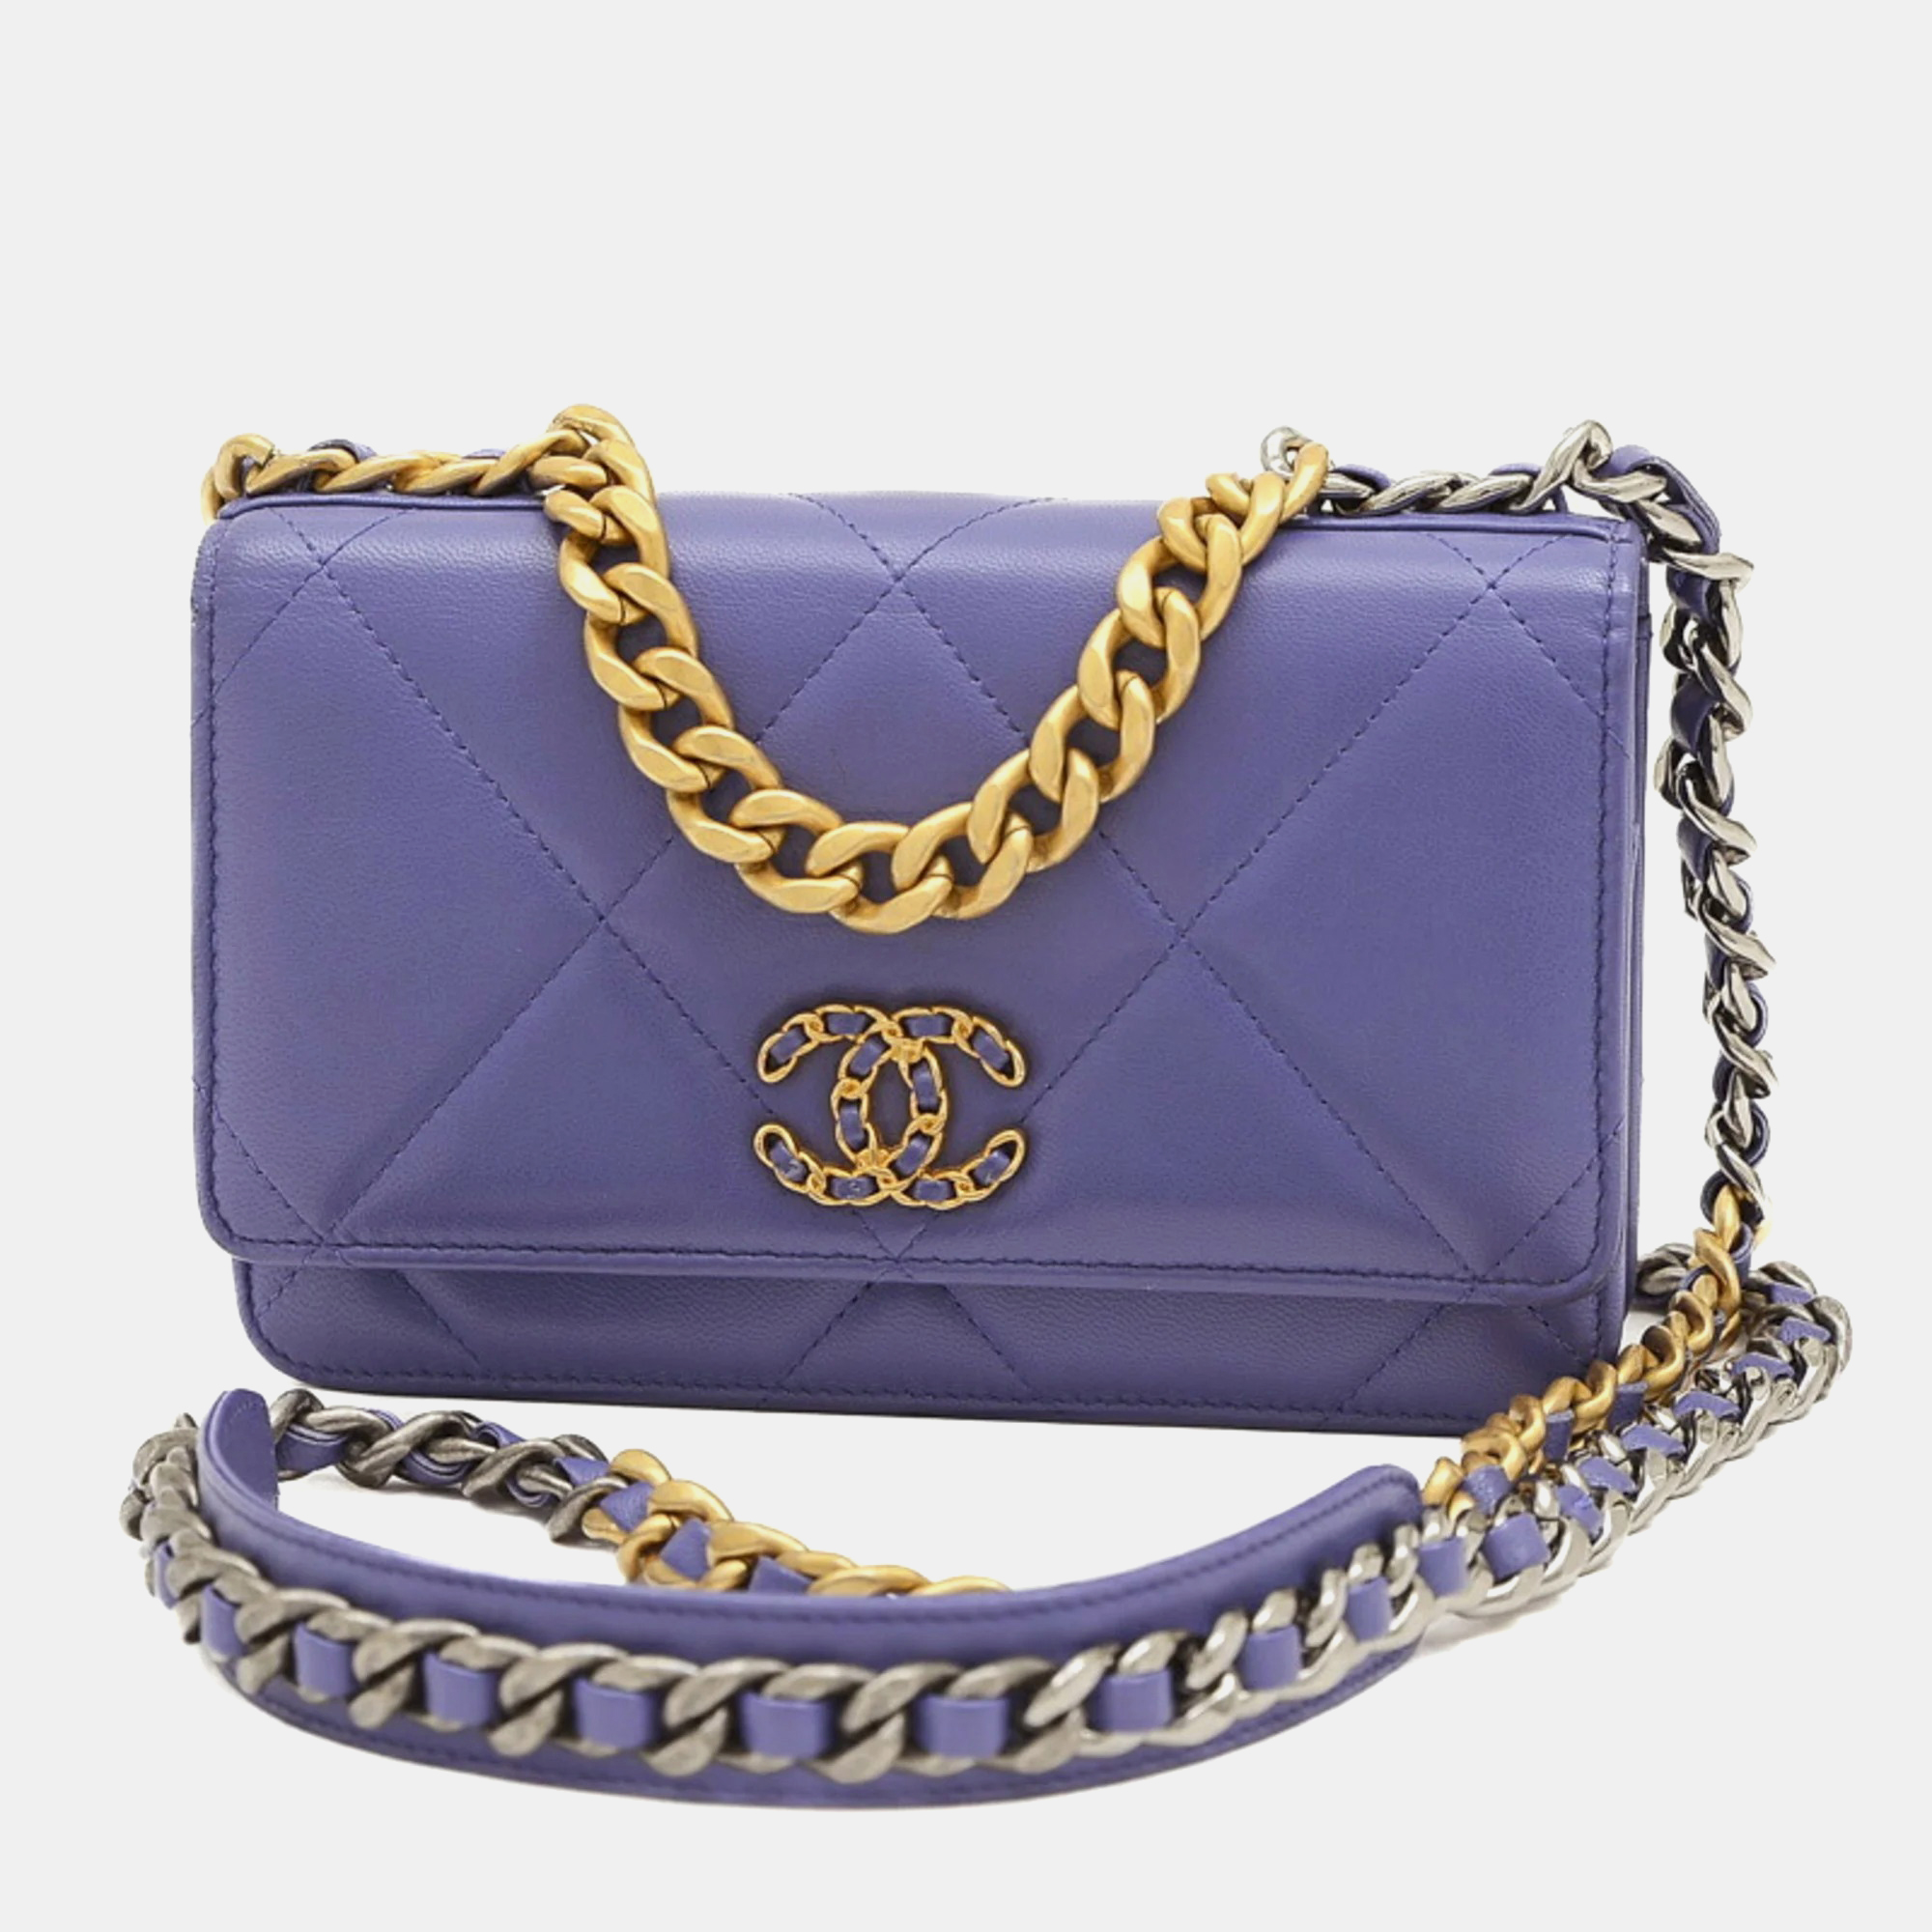 Chanel purple lambskin leather 19 wallet on chain